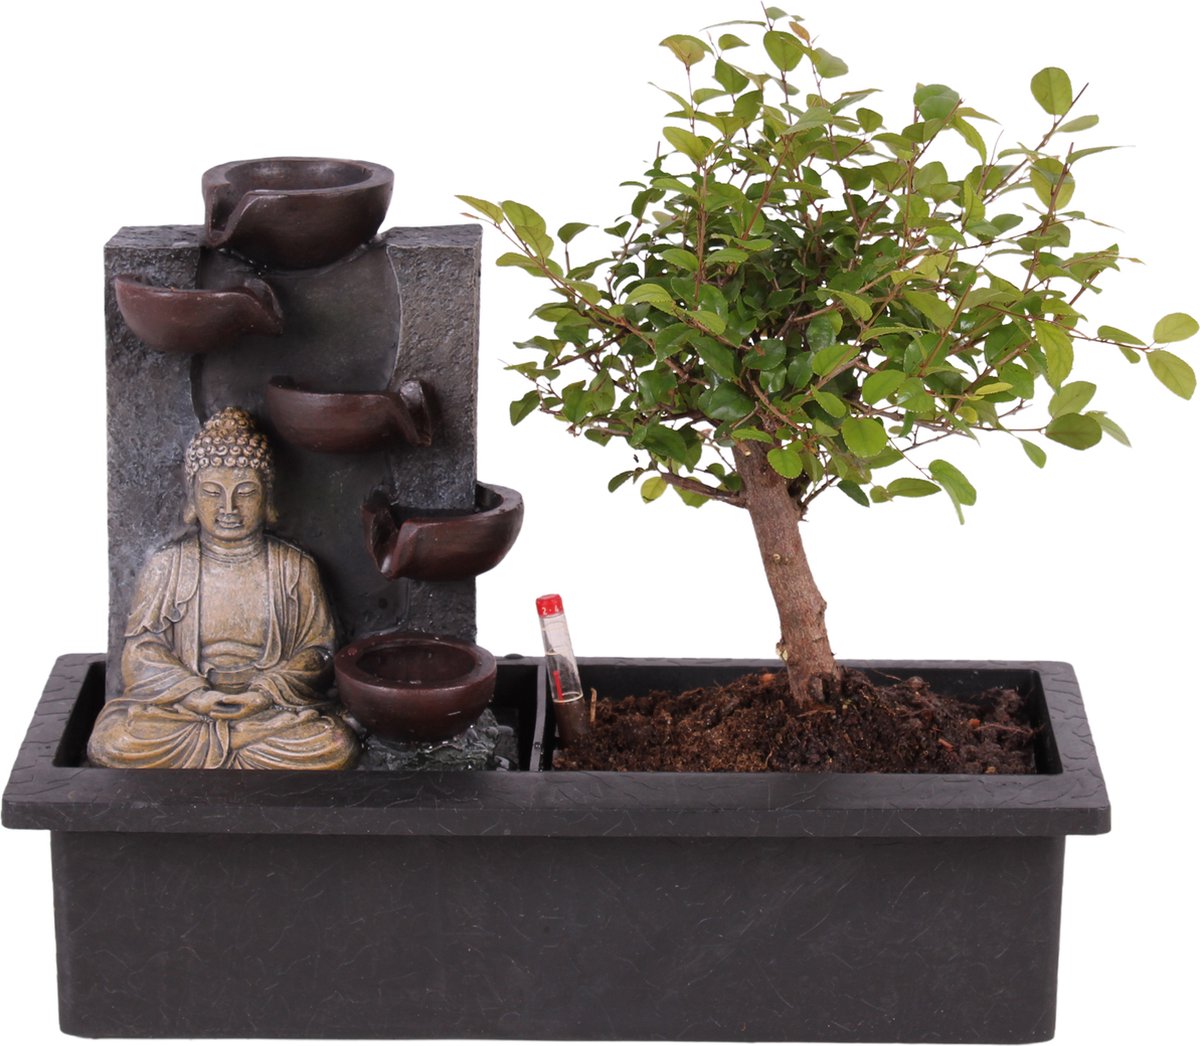 Bonsaï avec système d'eau - Pierres zen - Plante d'intérieur